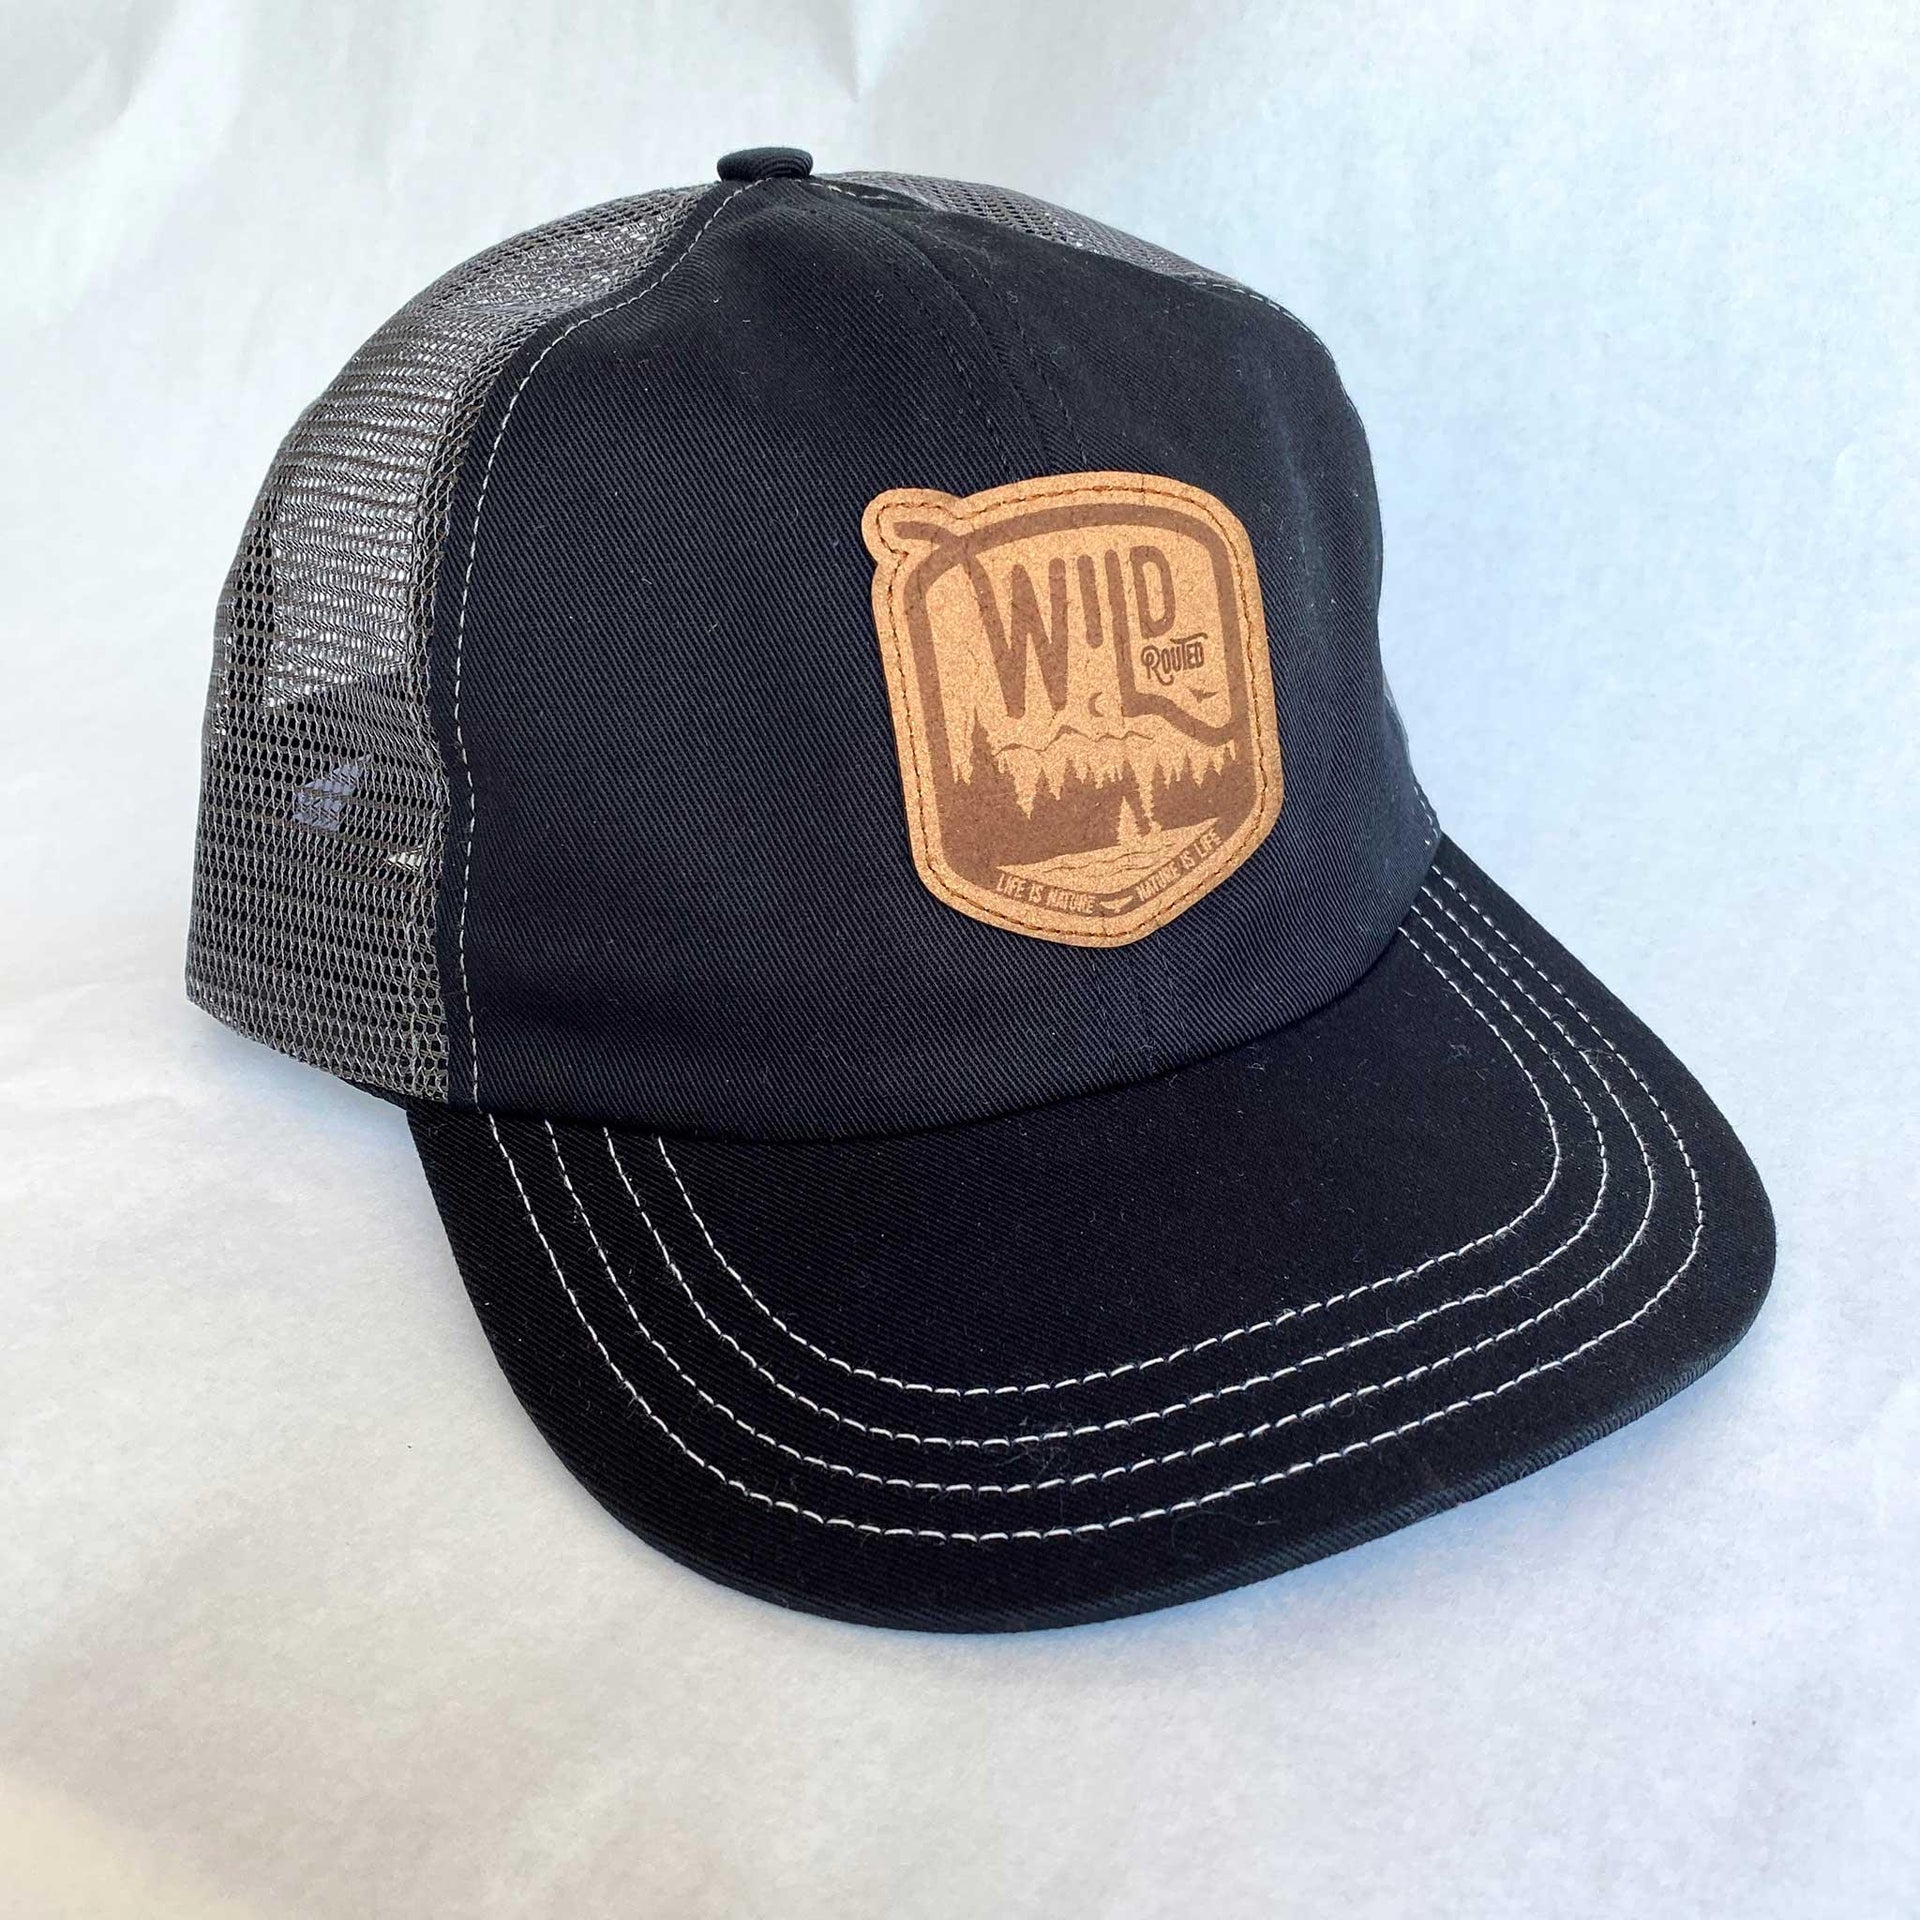 WILD Trucker Cap - Wild Routed